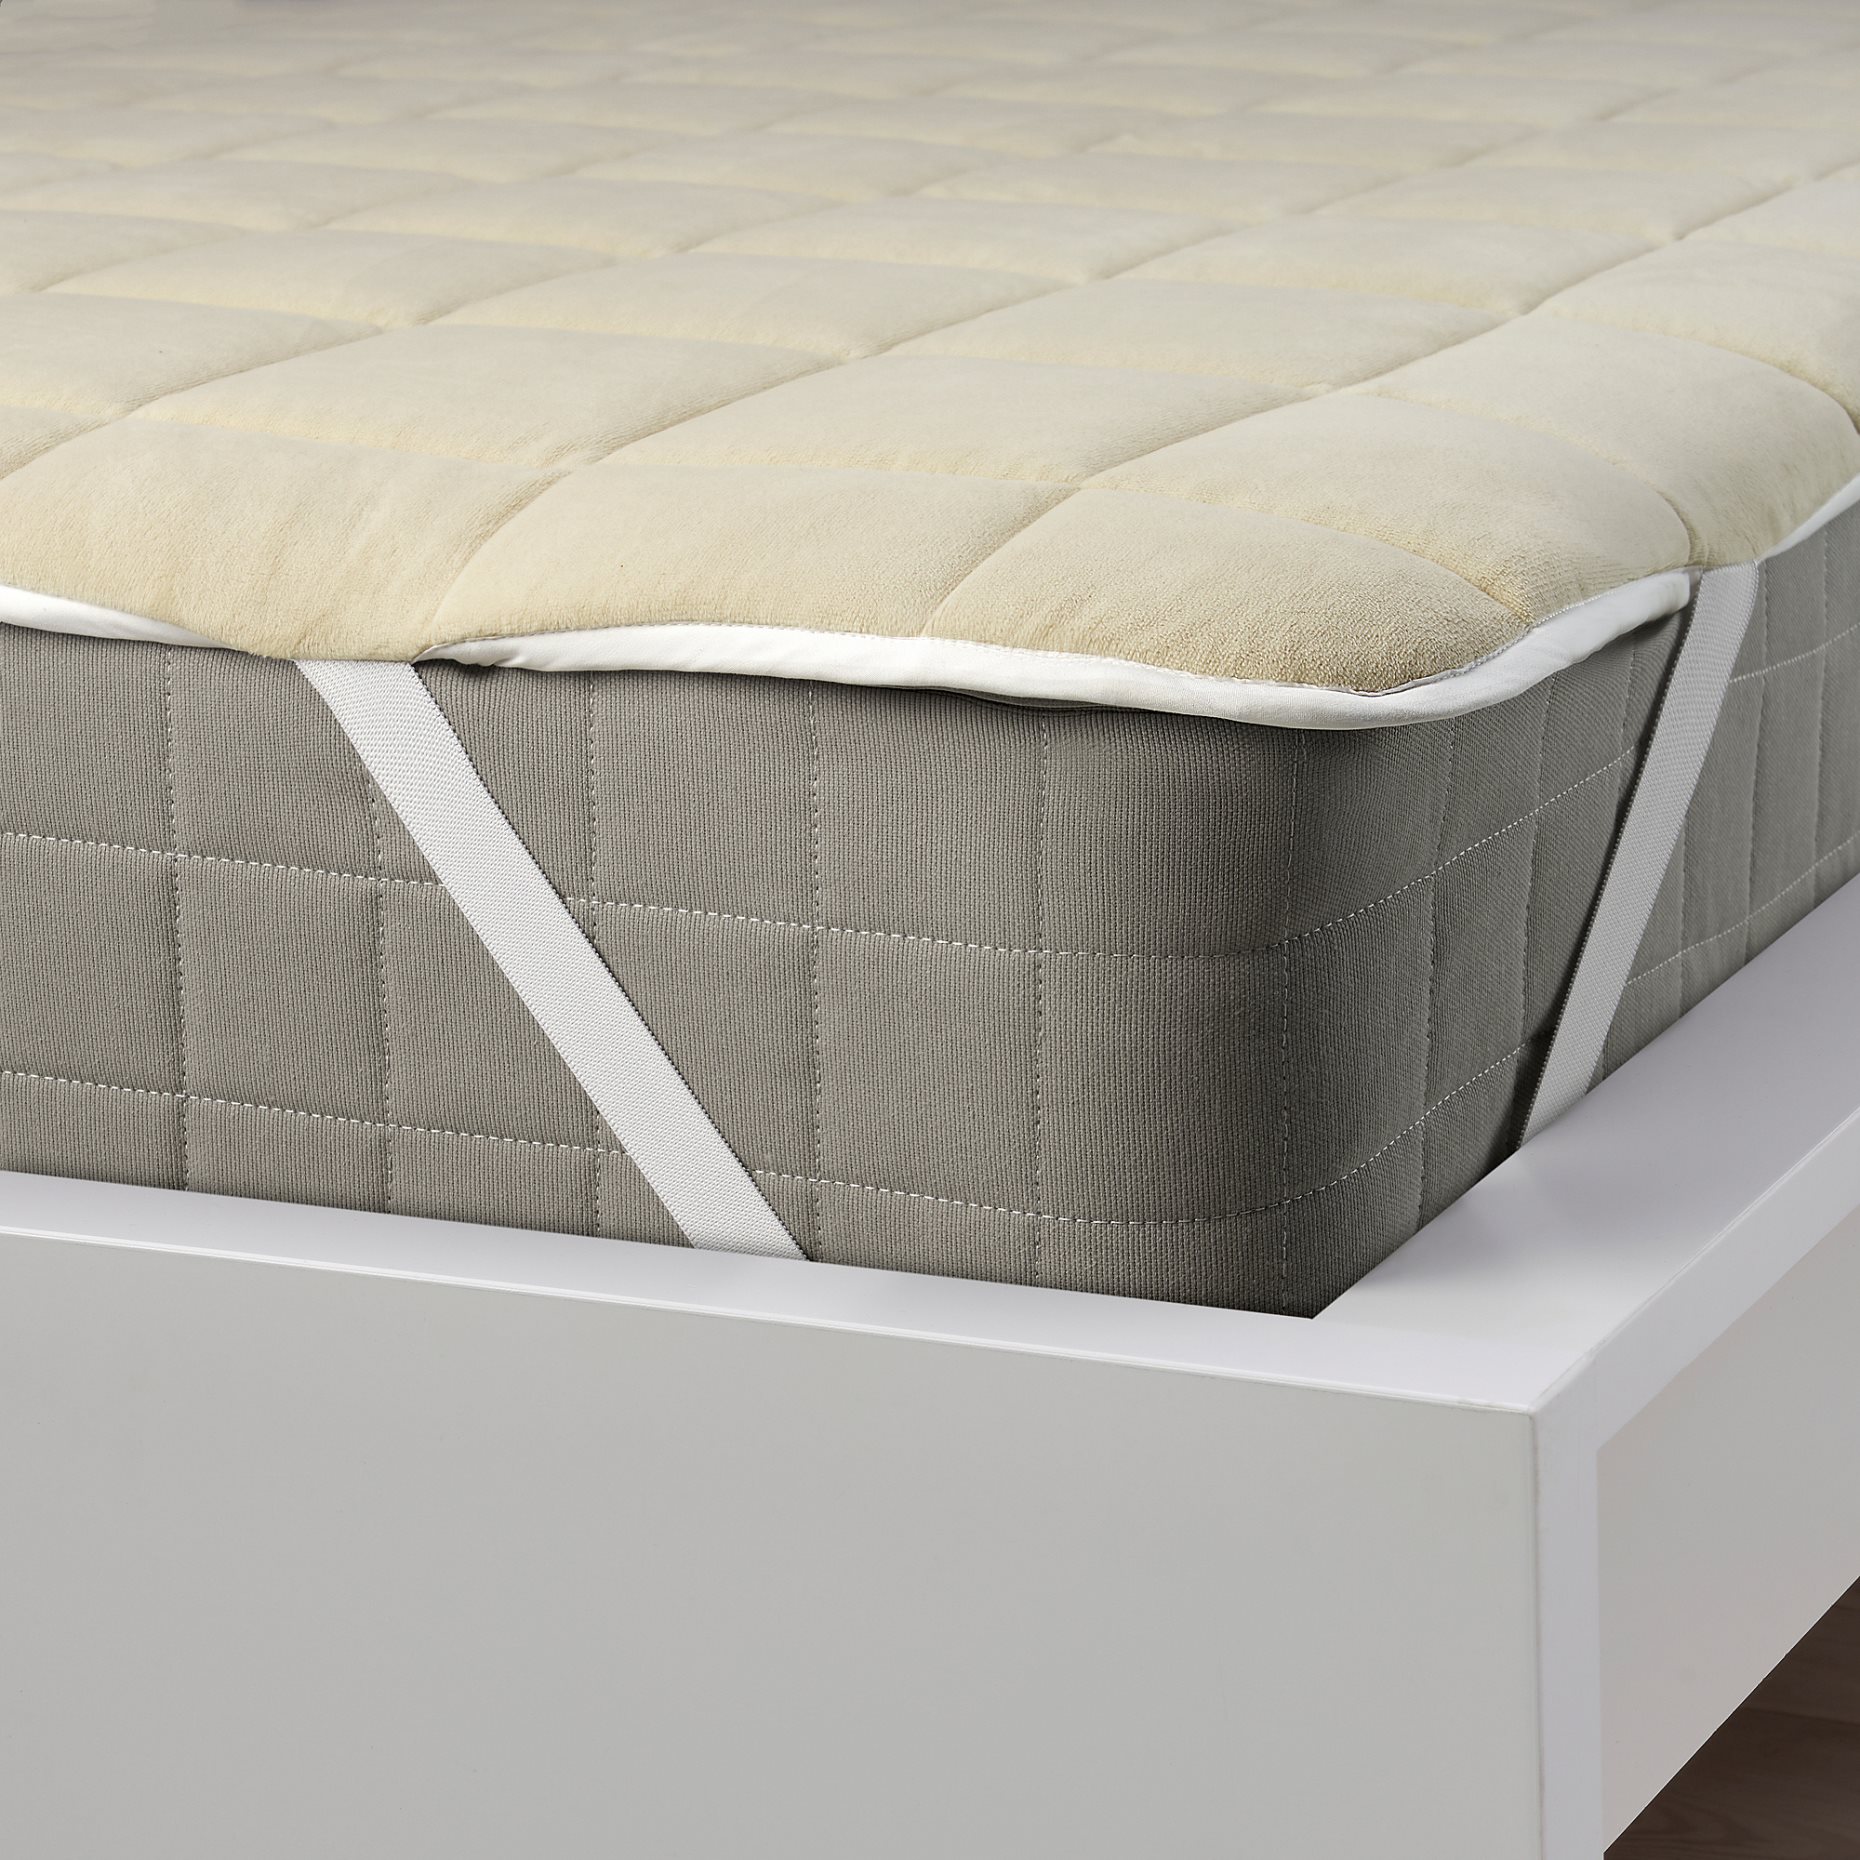 KEJSAROLVON, mattress protector, 90x200 cm, 705.804.25